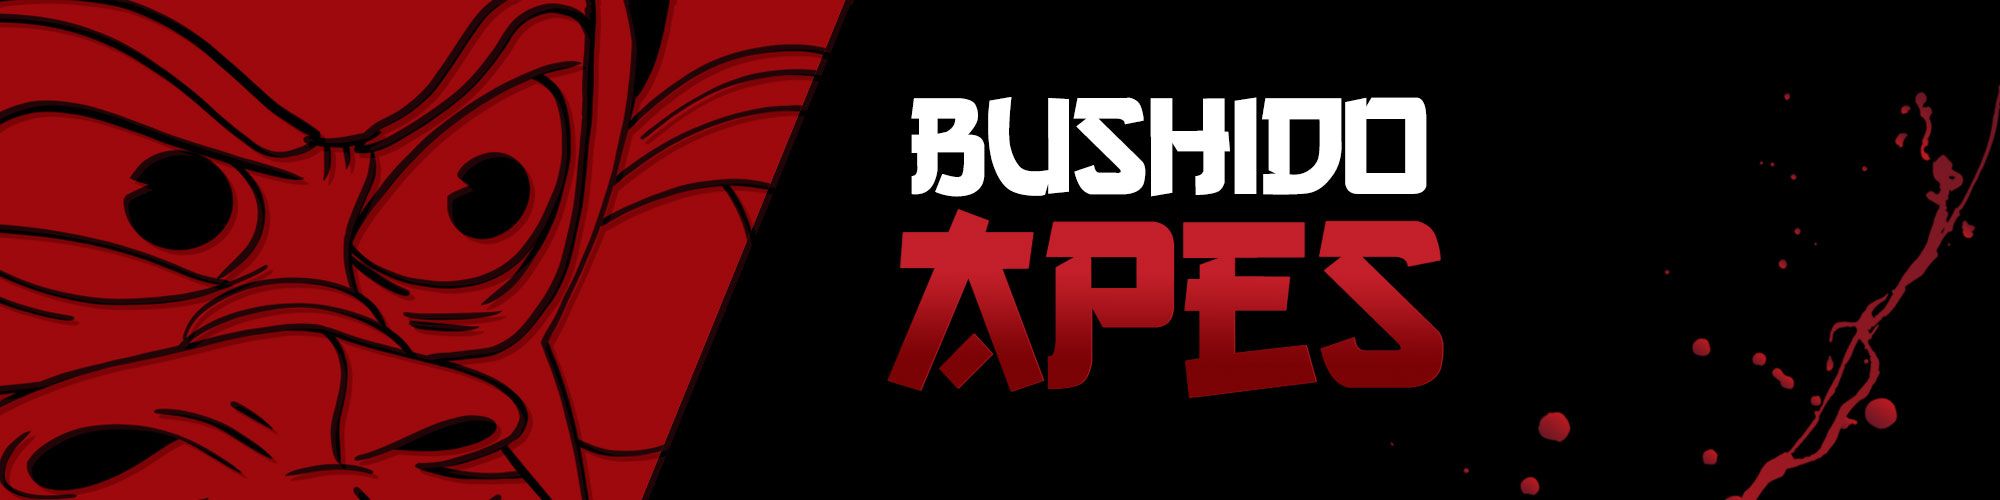 BushidoApes バナー